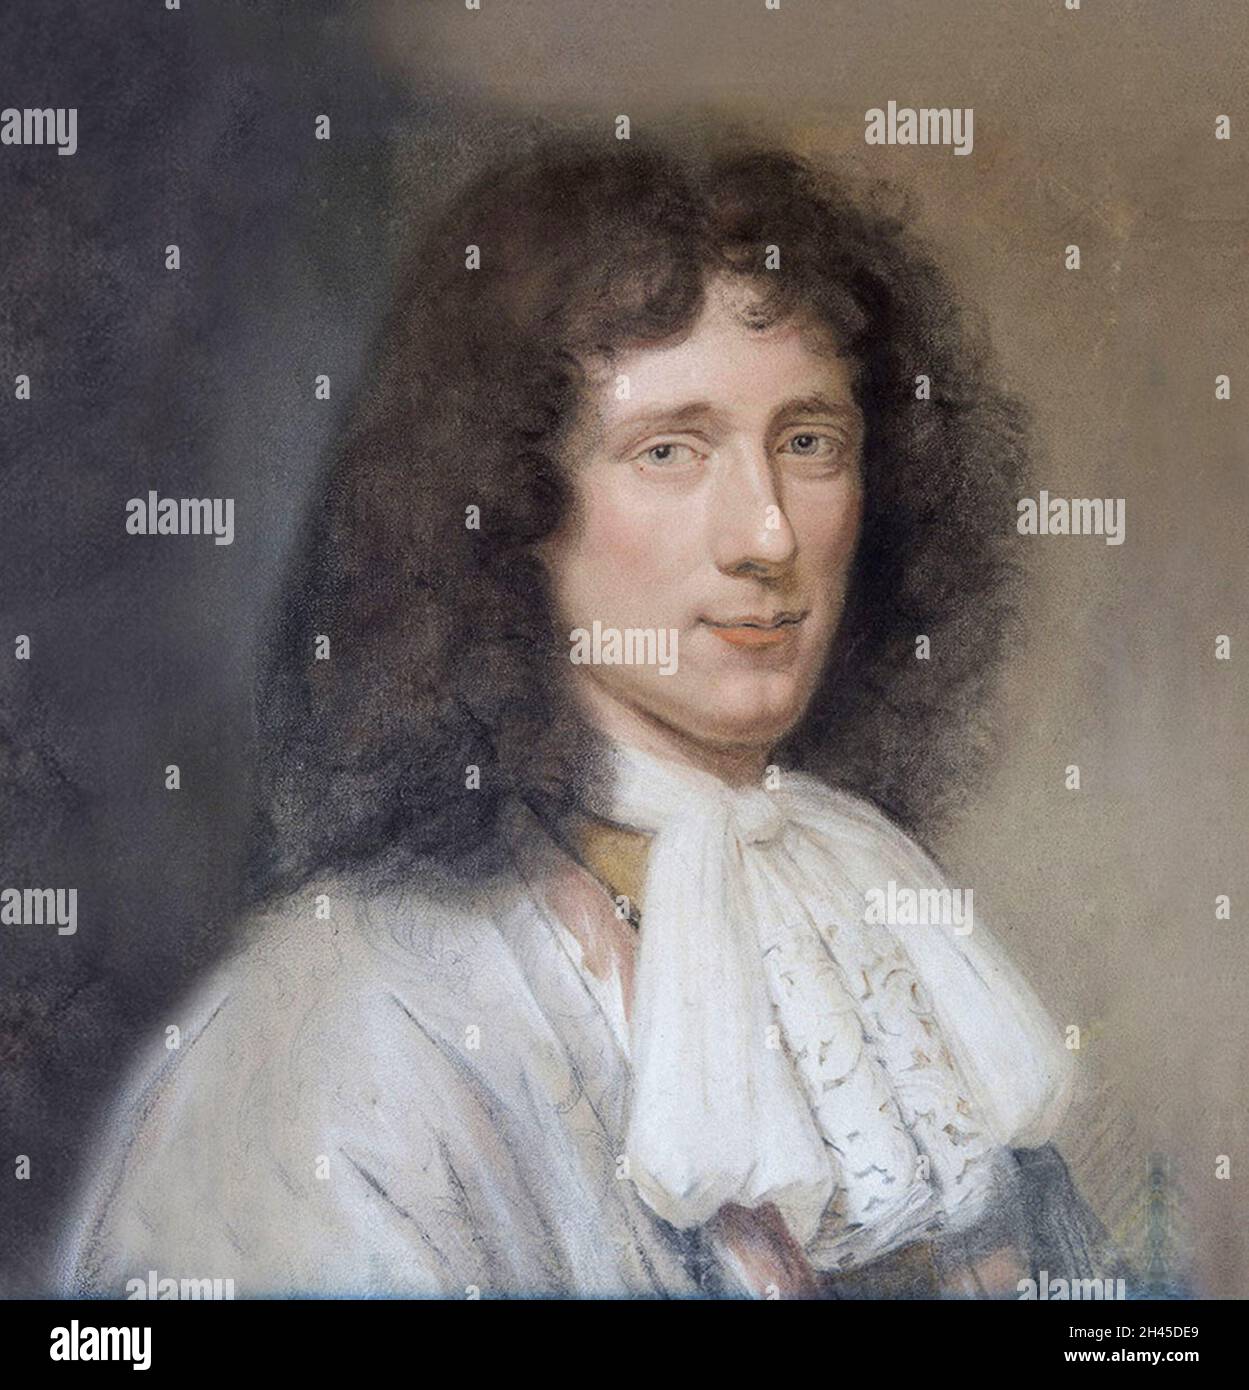 Ein Porträt des niederländischen Physikers und Mathematikers Christiaan Huygens aus dem 17. Jahrhundert Stockfoto